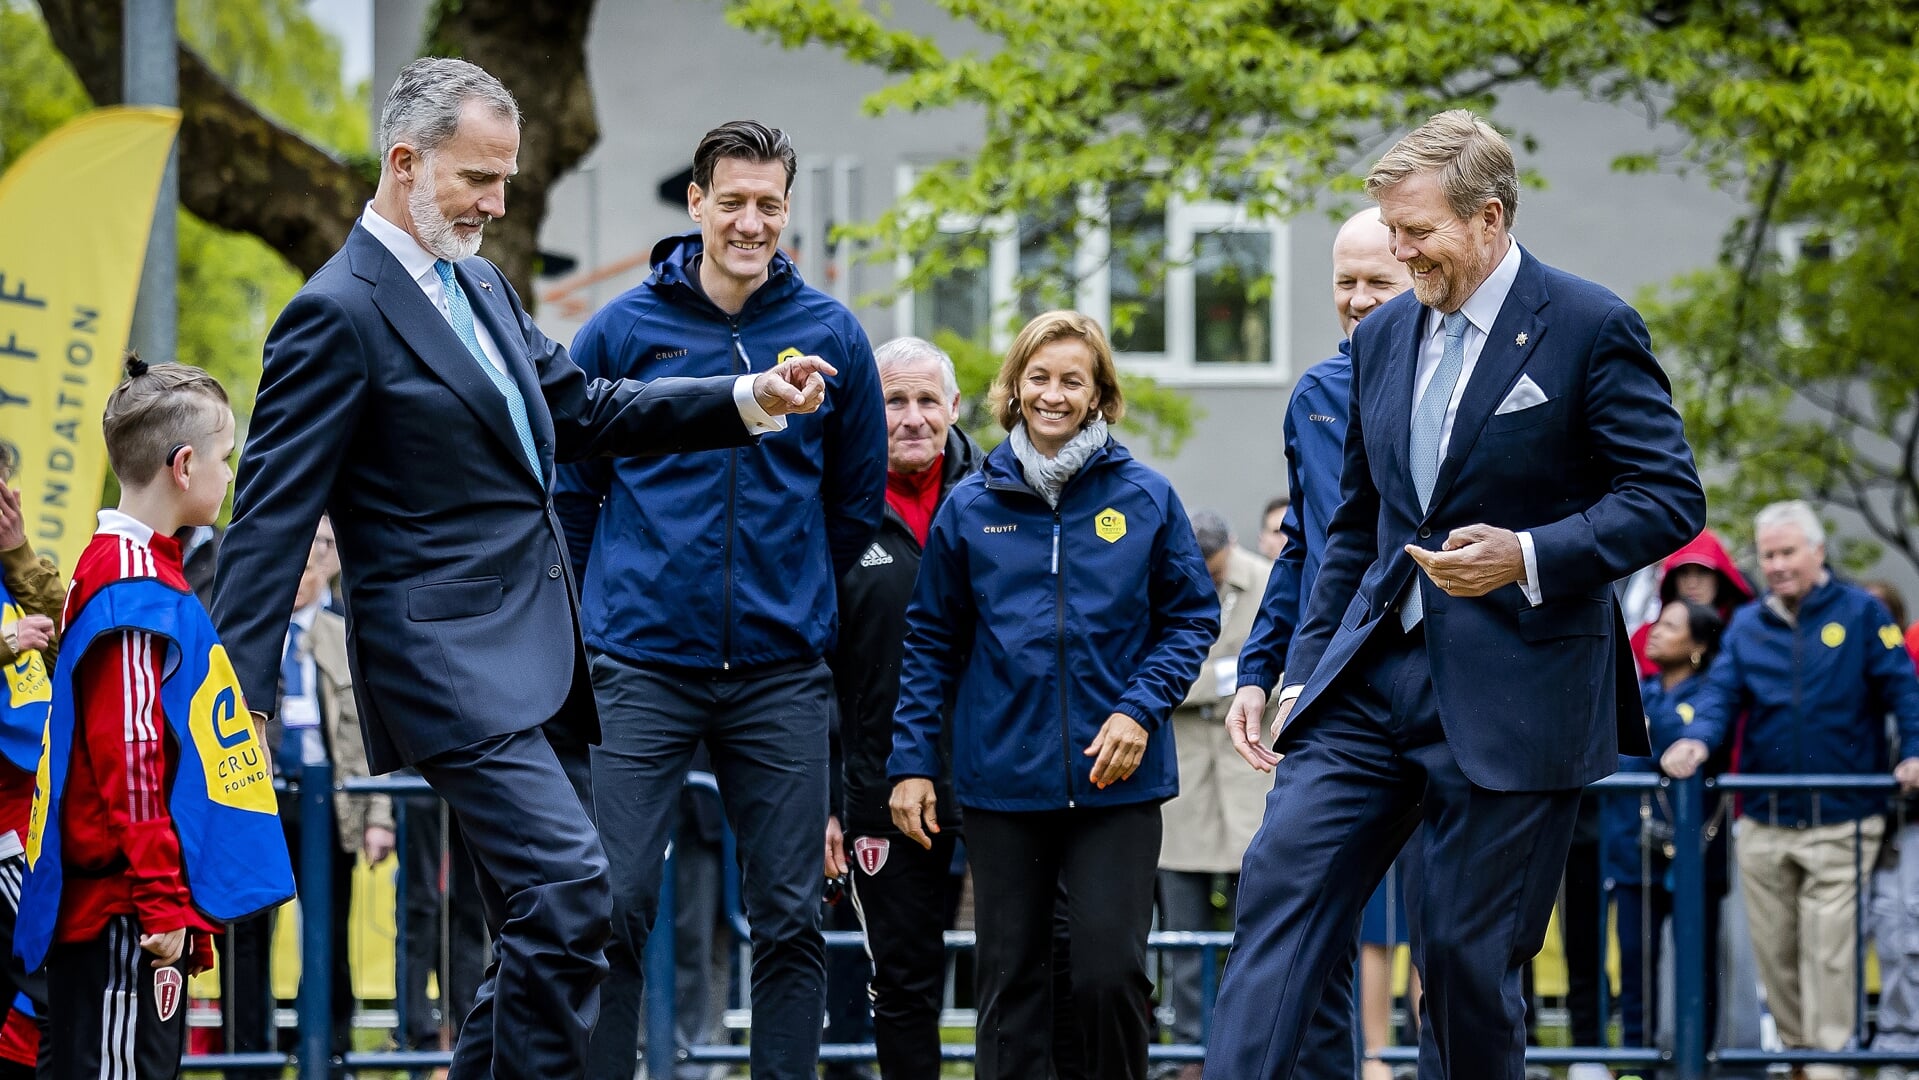 Koning Willem-Alexander en Koning Felipe trappen een balletje tijdens een sportmiddag van de Cruyff Foundation.